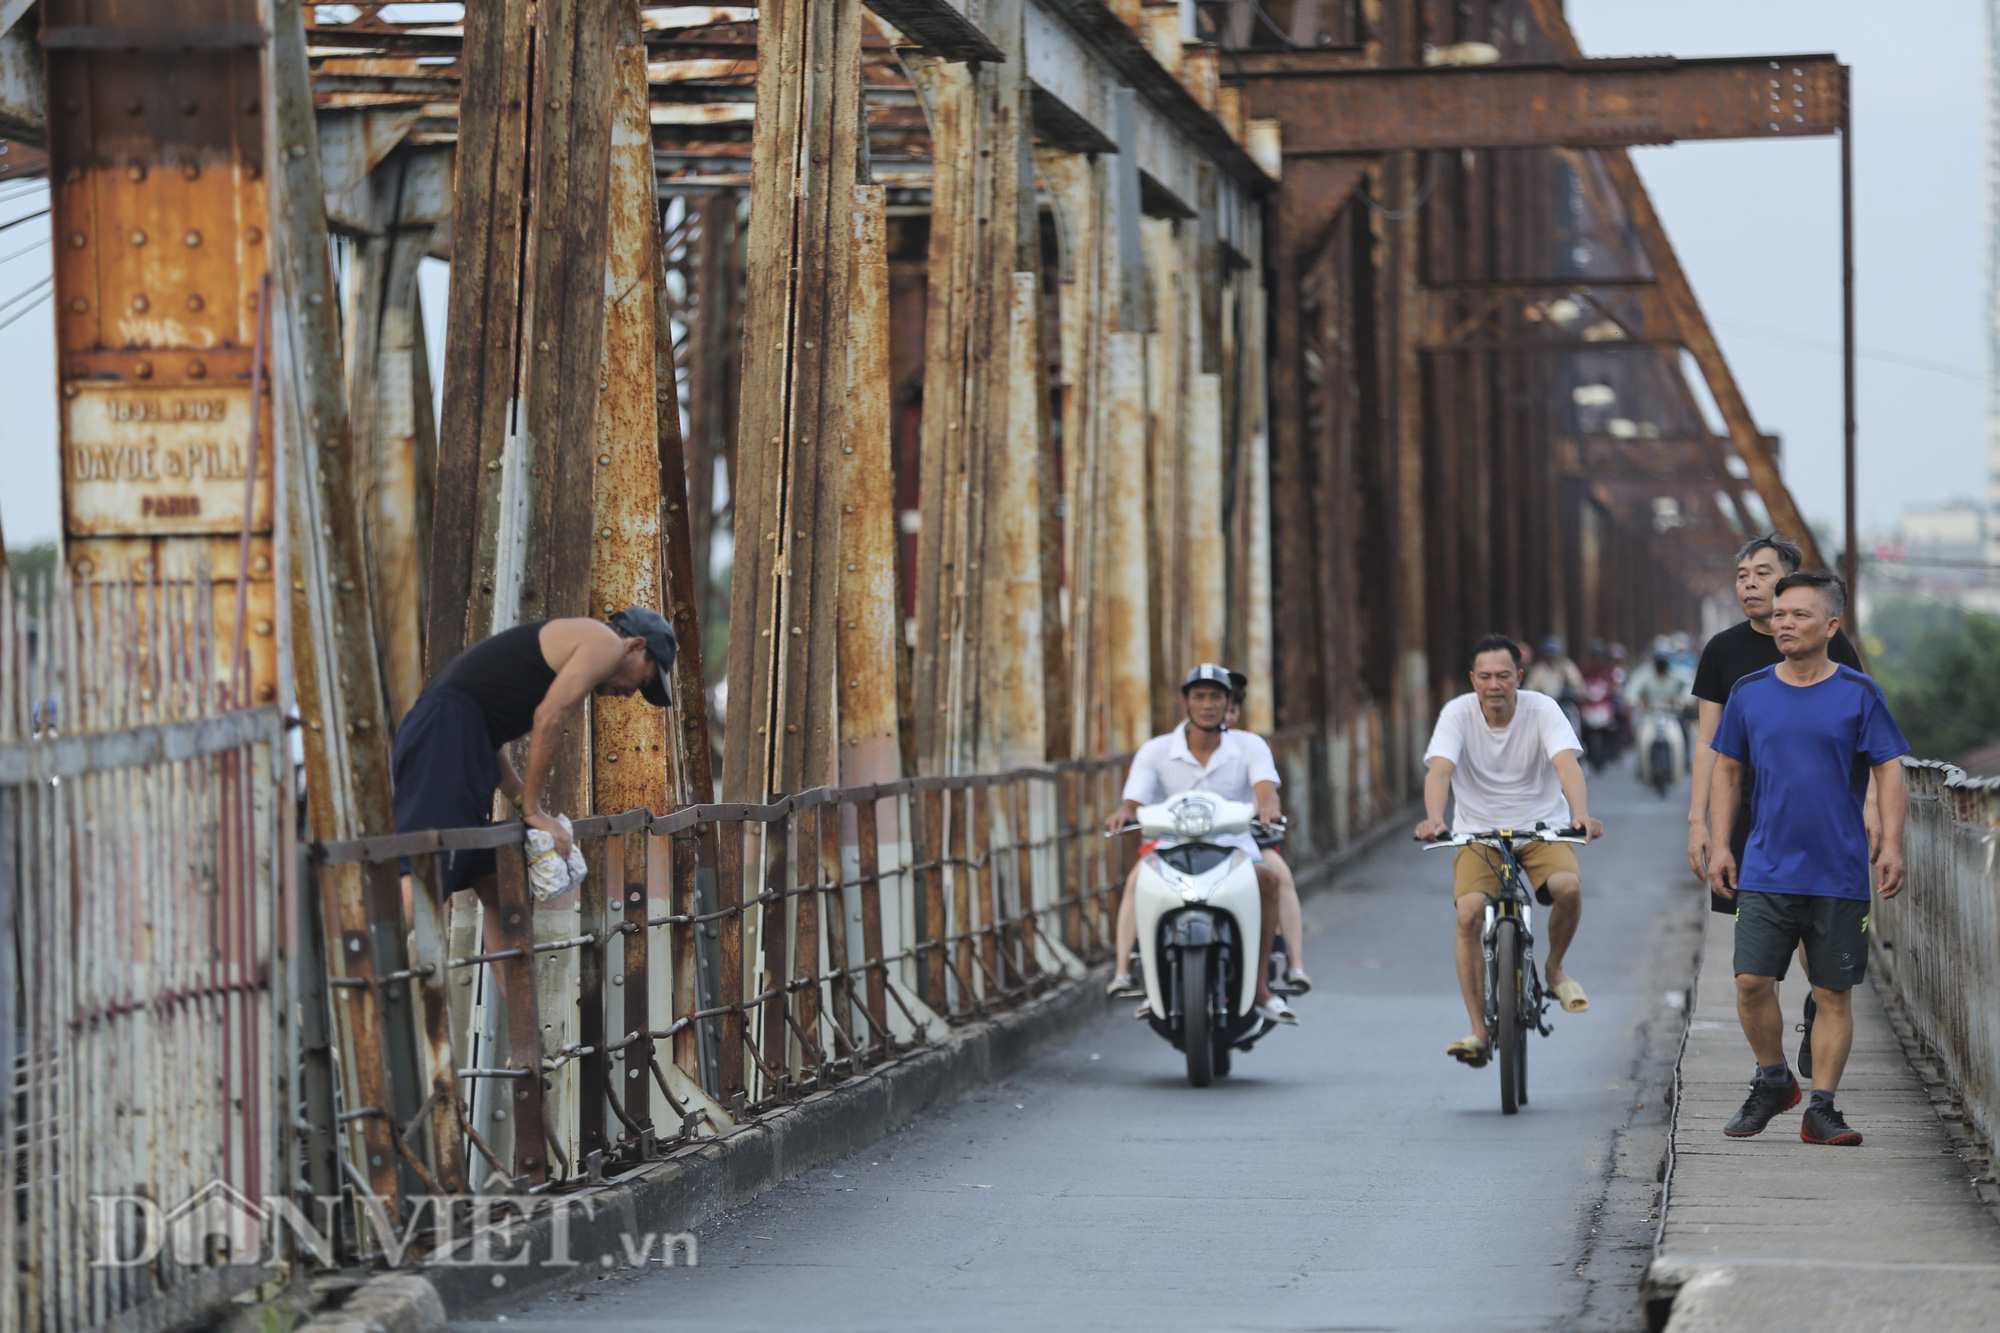 Mặc biển cấm, người dân vẫn vô tư đi bộ trên cầu Long Biên - Ảnh 2.